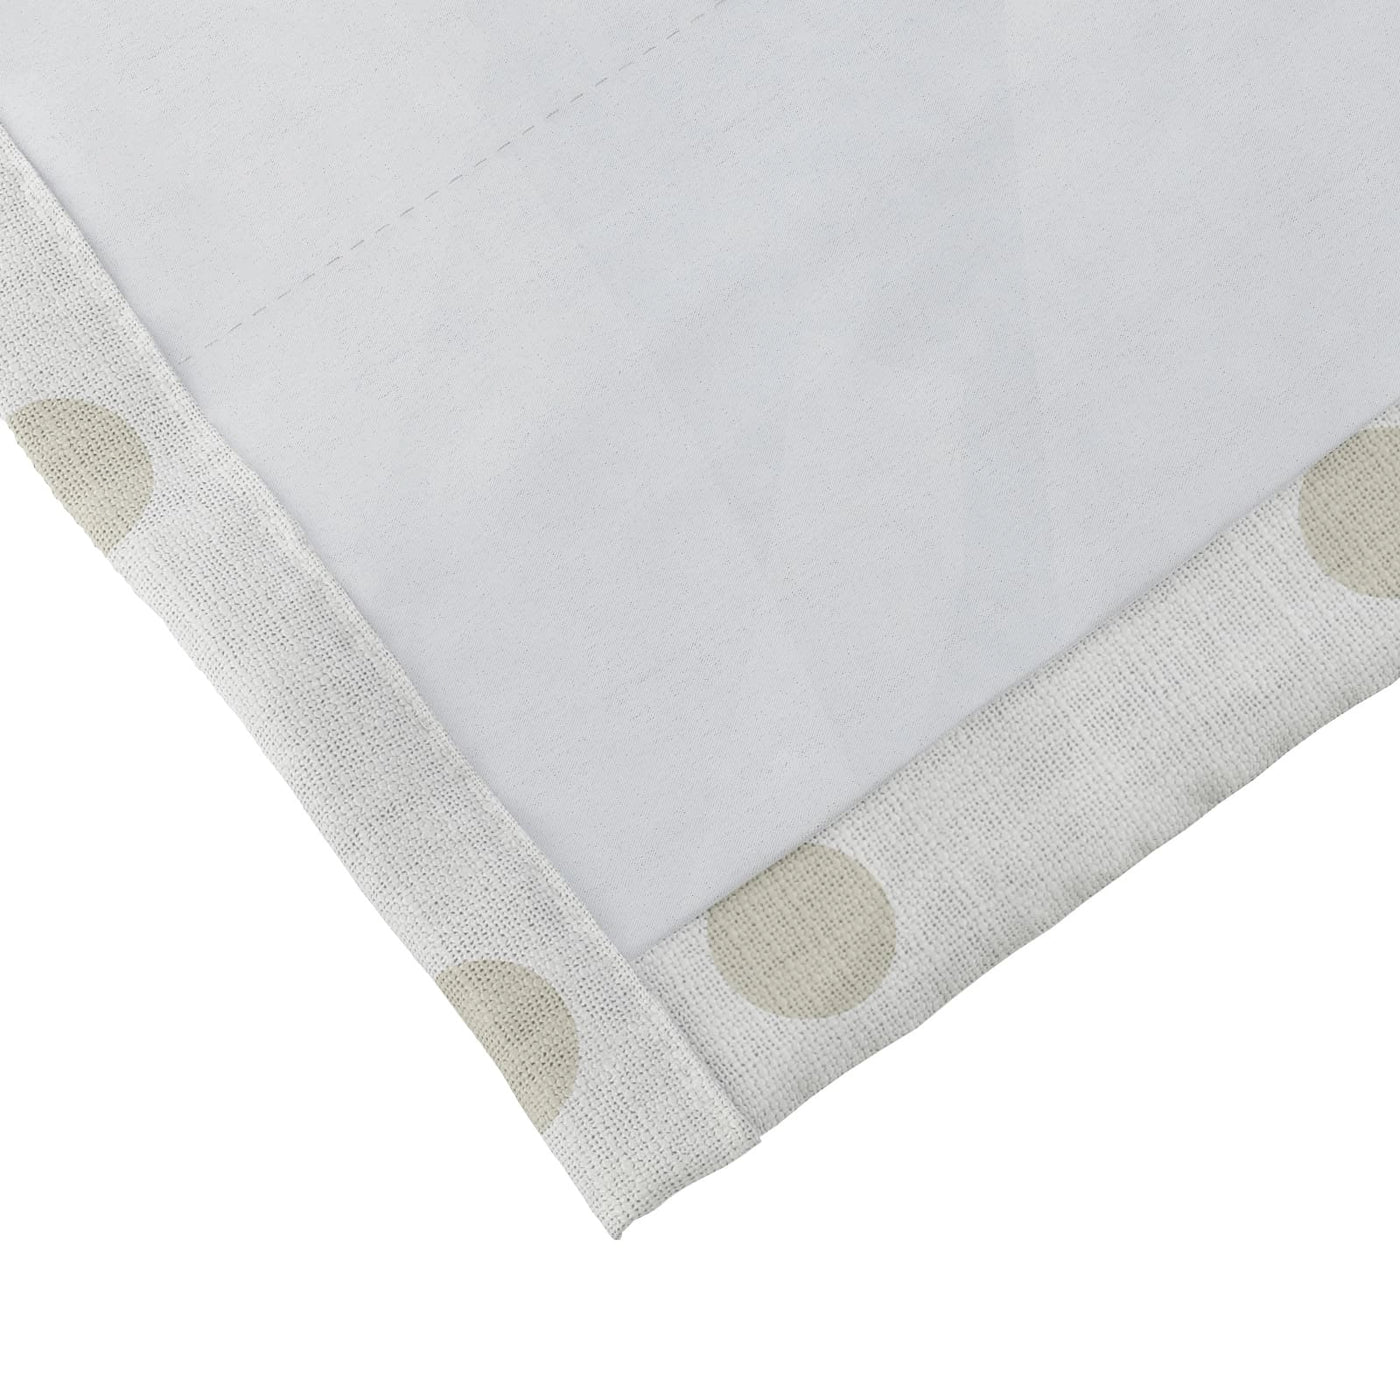 Stefana Silber Print Polyester Linen Curtain Drapery Soft Top